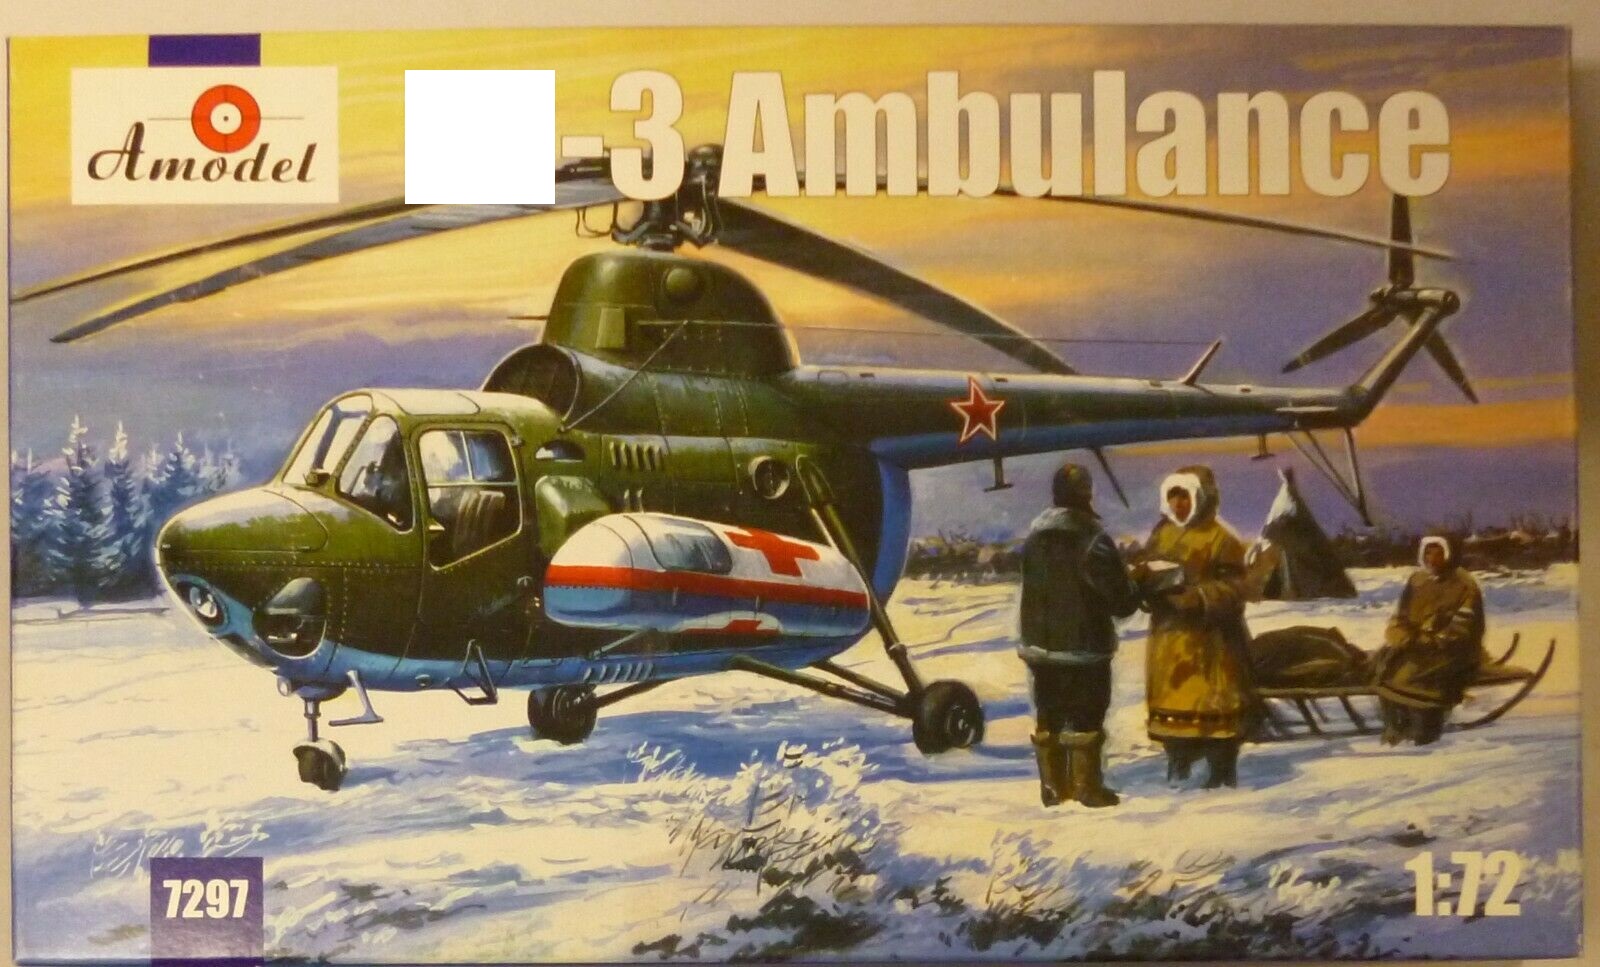 7297  авиация  M-3 Ambulance  (1:72)